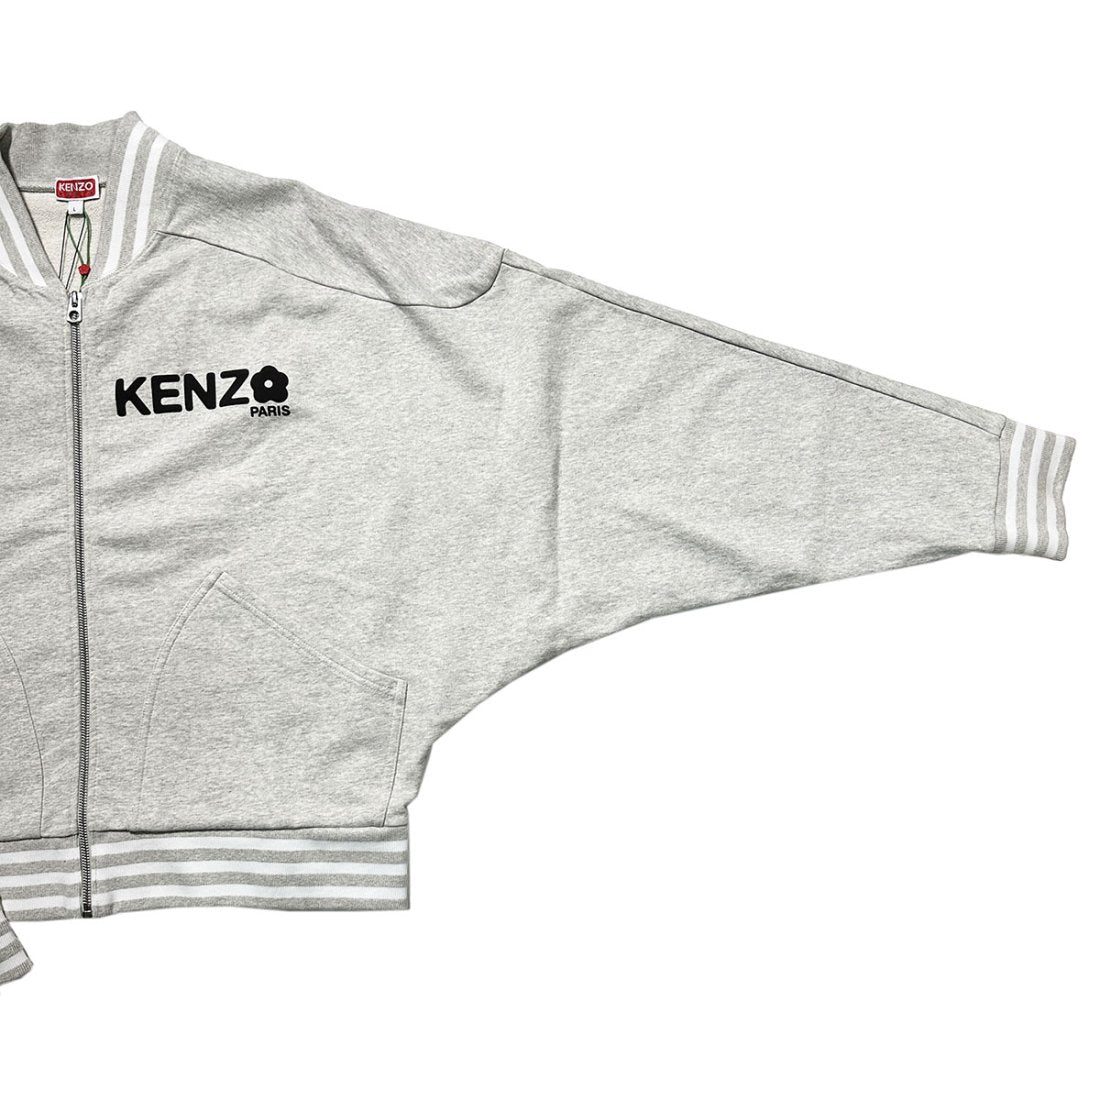 KENZO / ZIP UP SWEATSHIRT